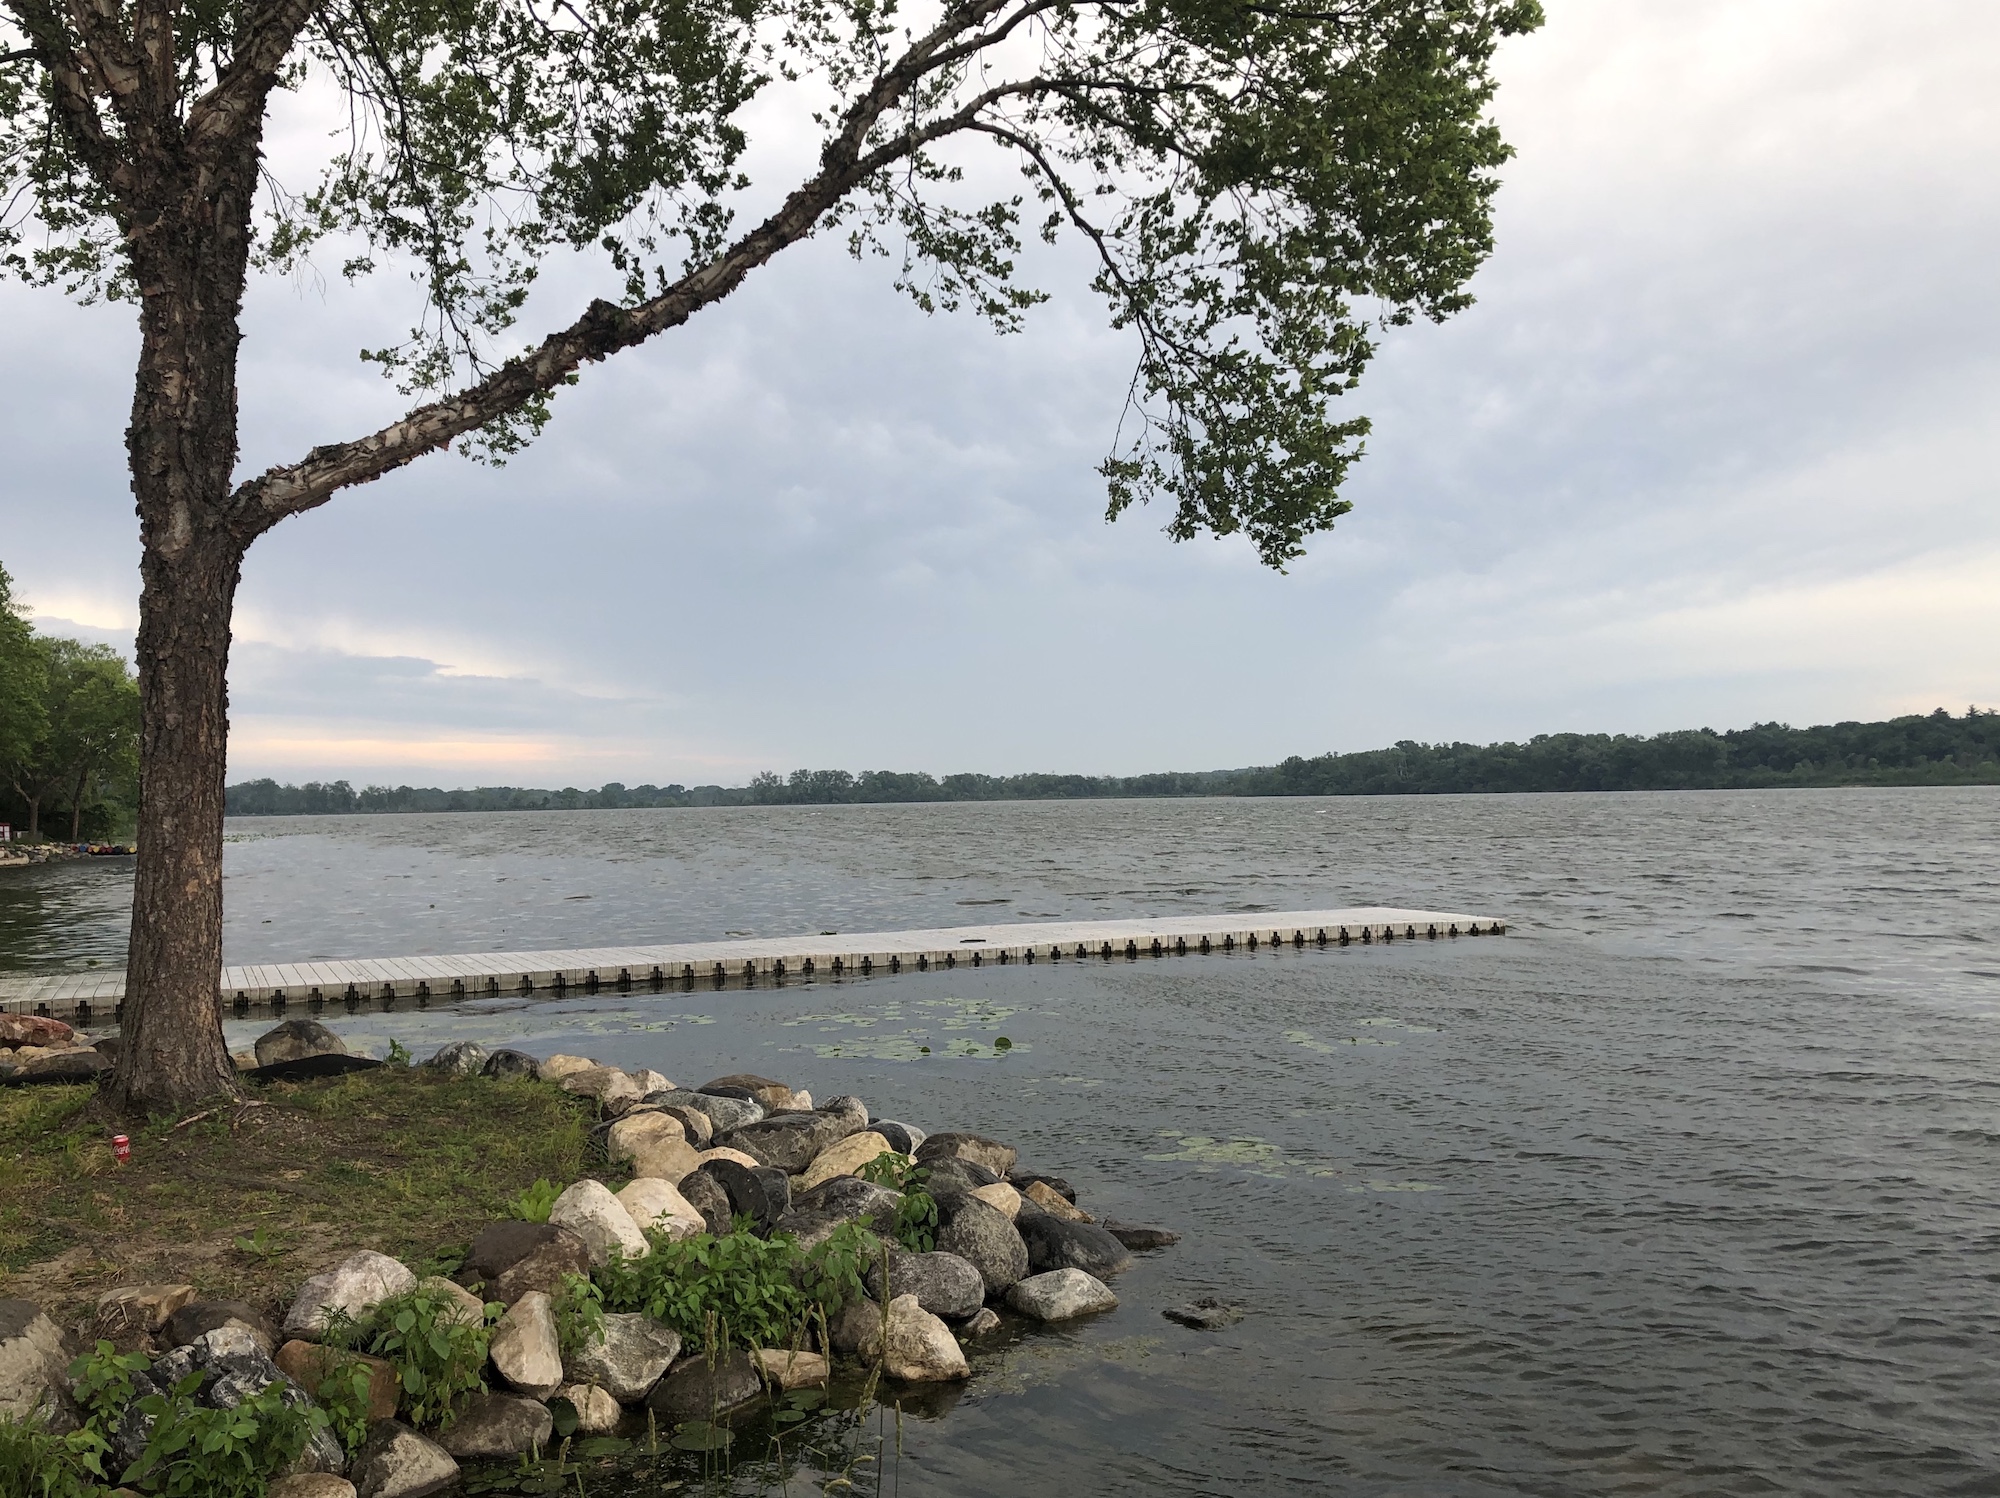 Lake Wingra on June 23, 2019.